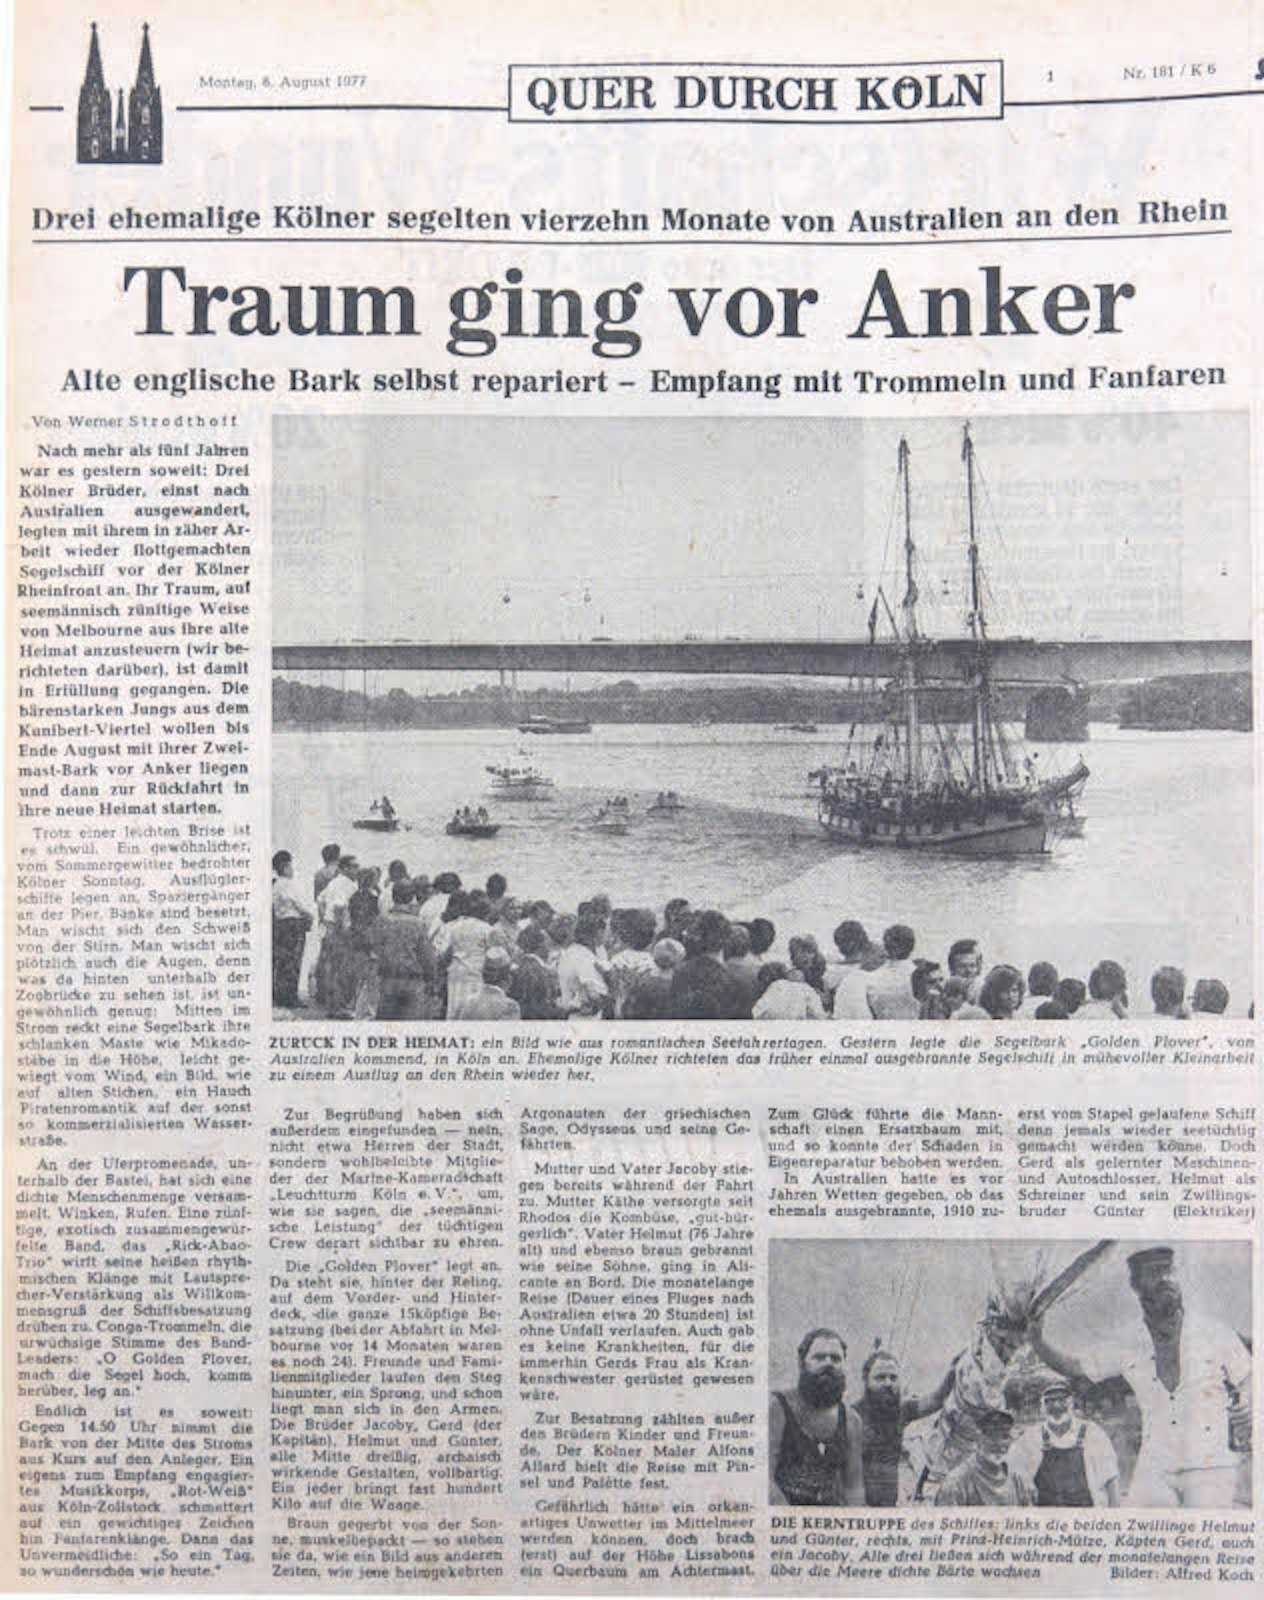 Die „Golden Plover“ war seit langem das erste Segelschiff dieser Größe auf dem Rhein – auch der „Kölner Stadt-Anzeiger“ berichtete über die Ankunft.